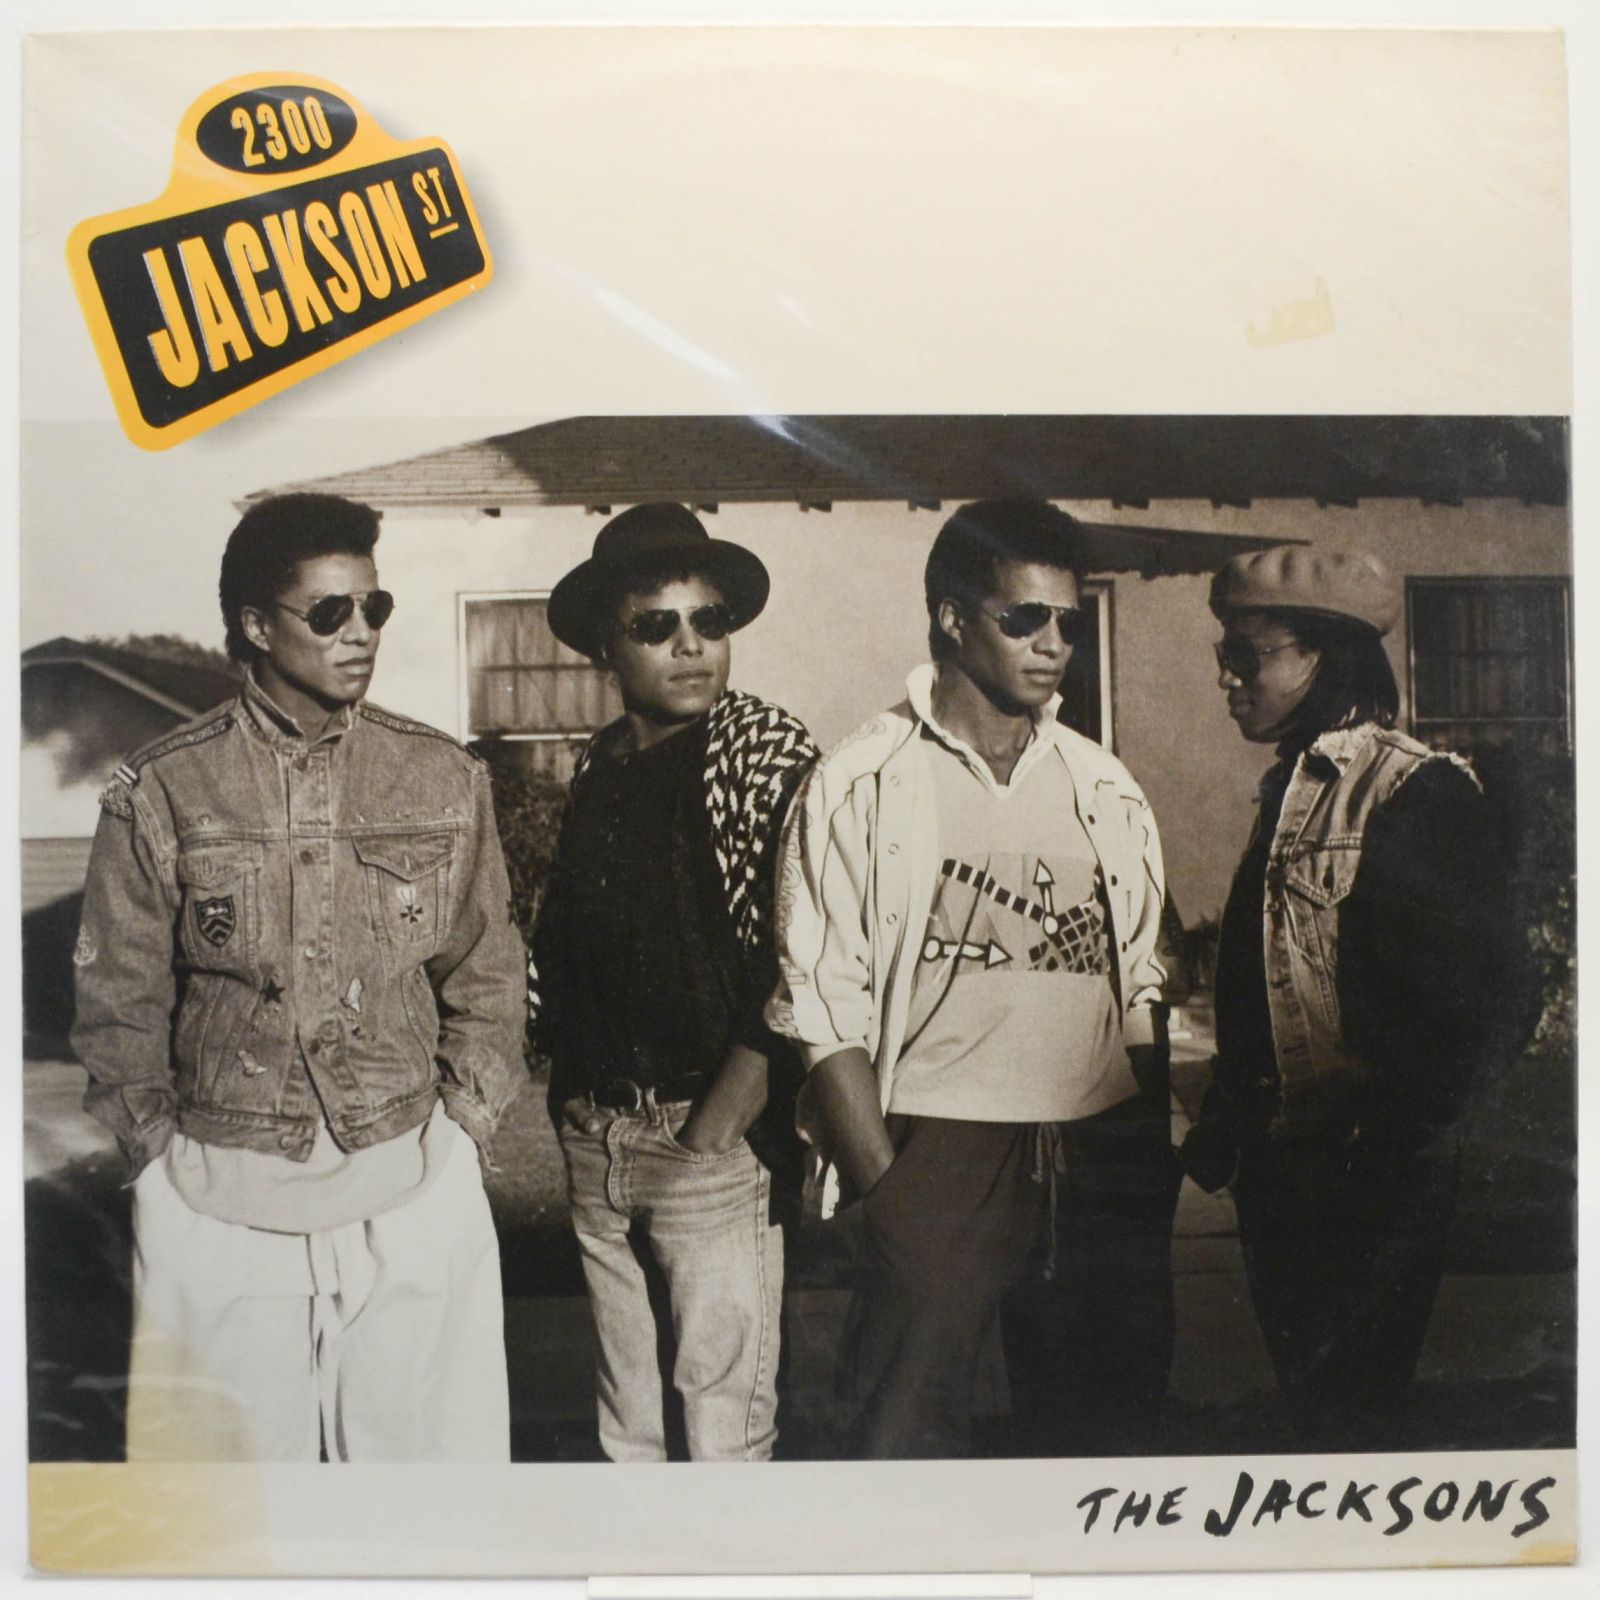 Jacksons — 2300 Jackson Street, 1989